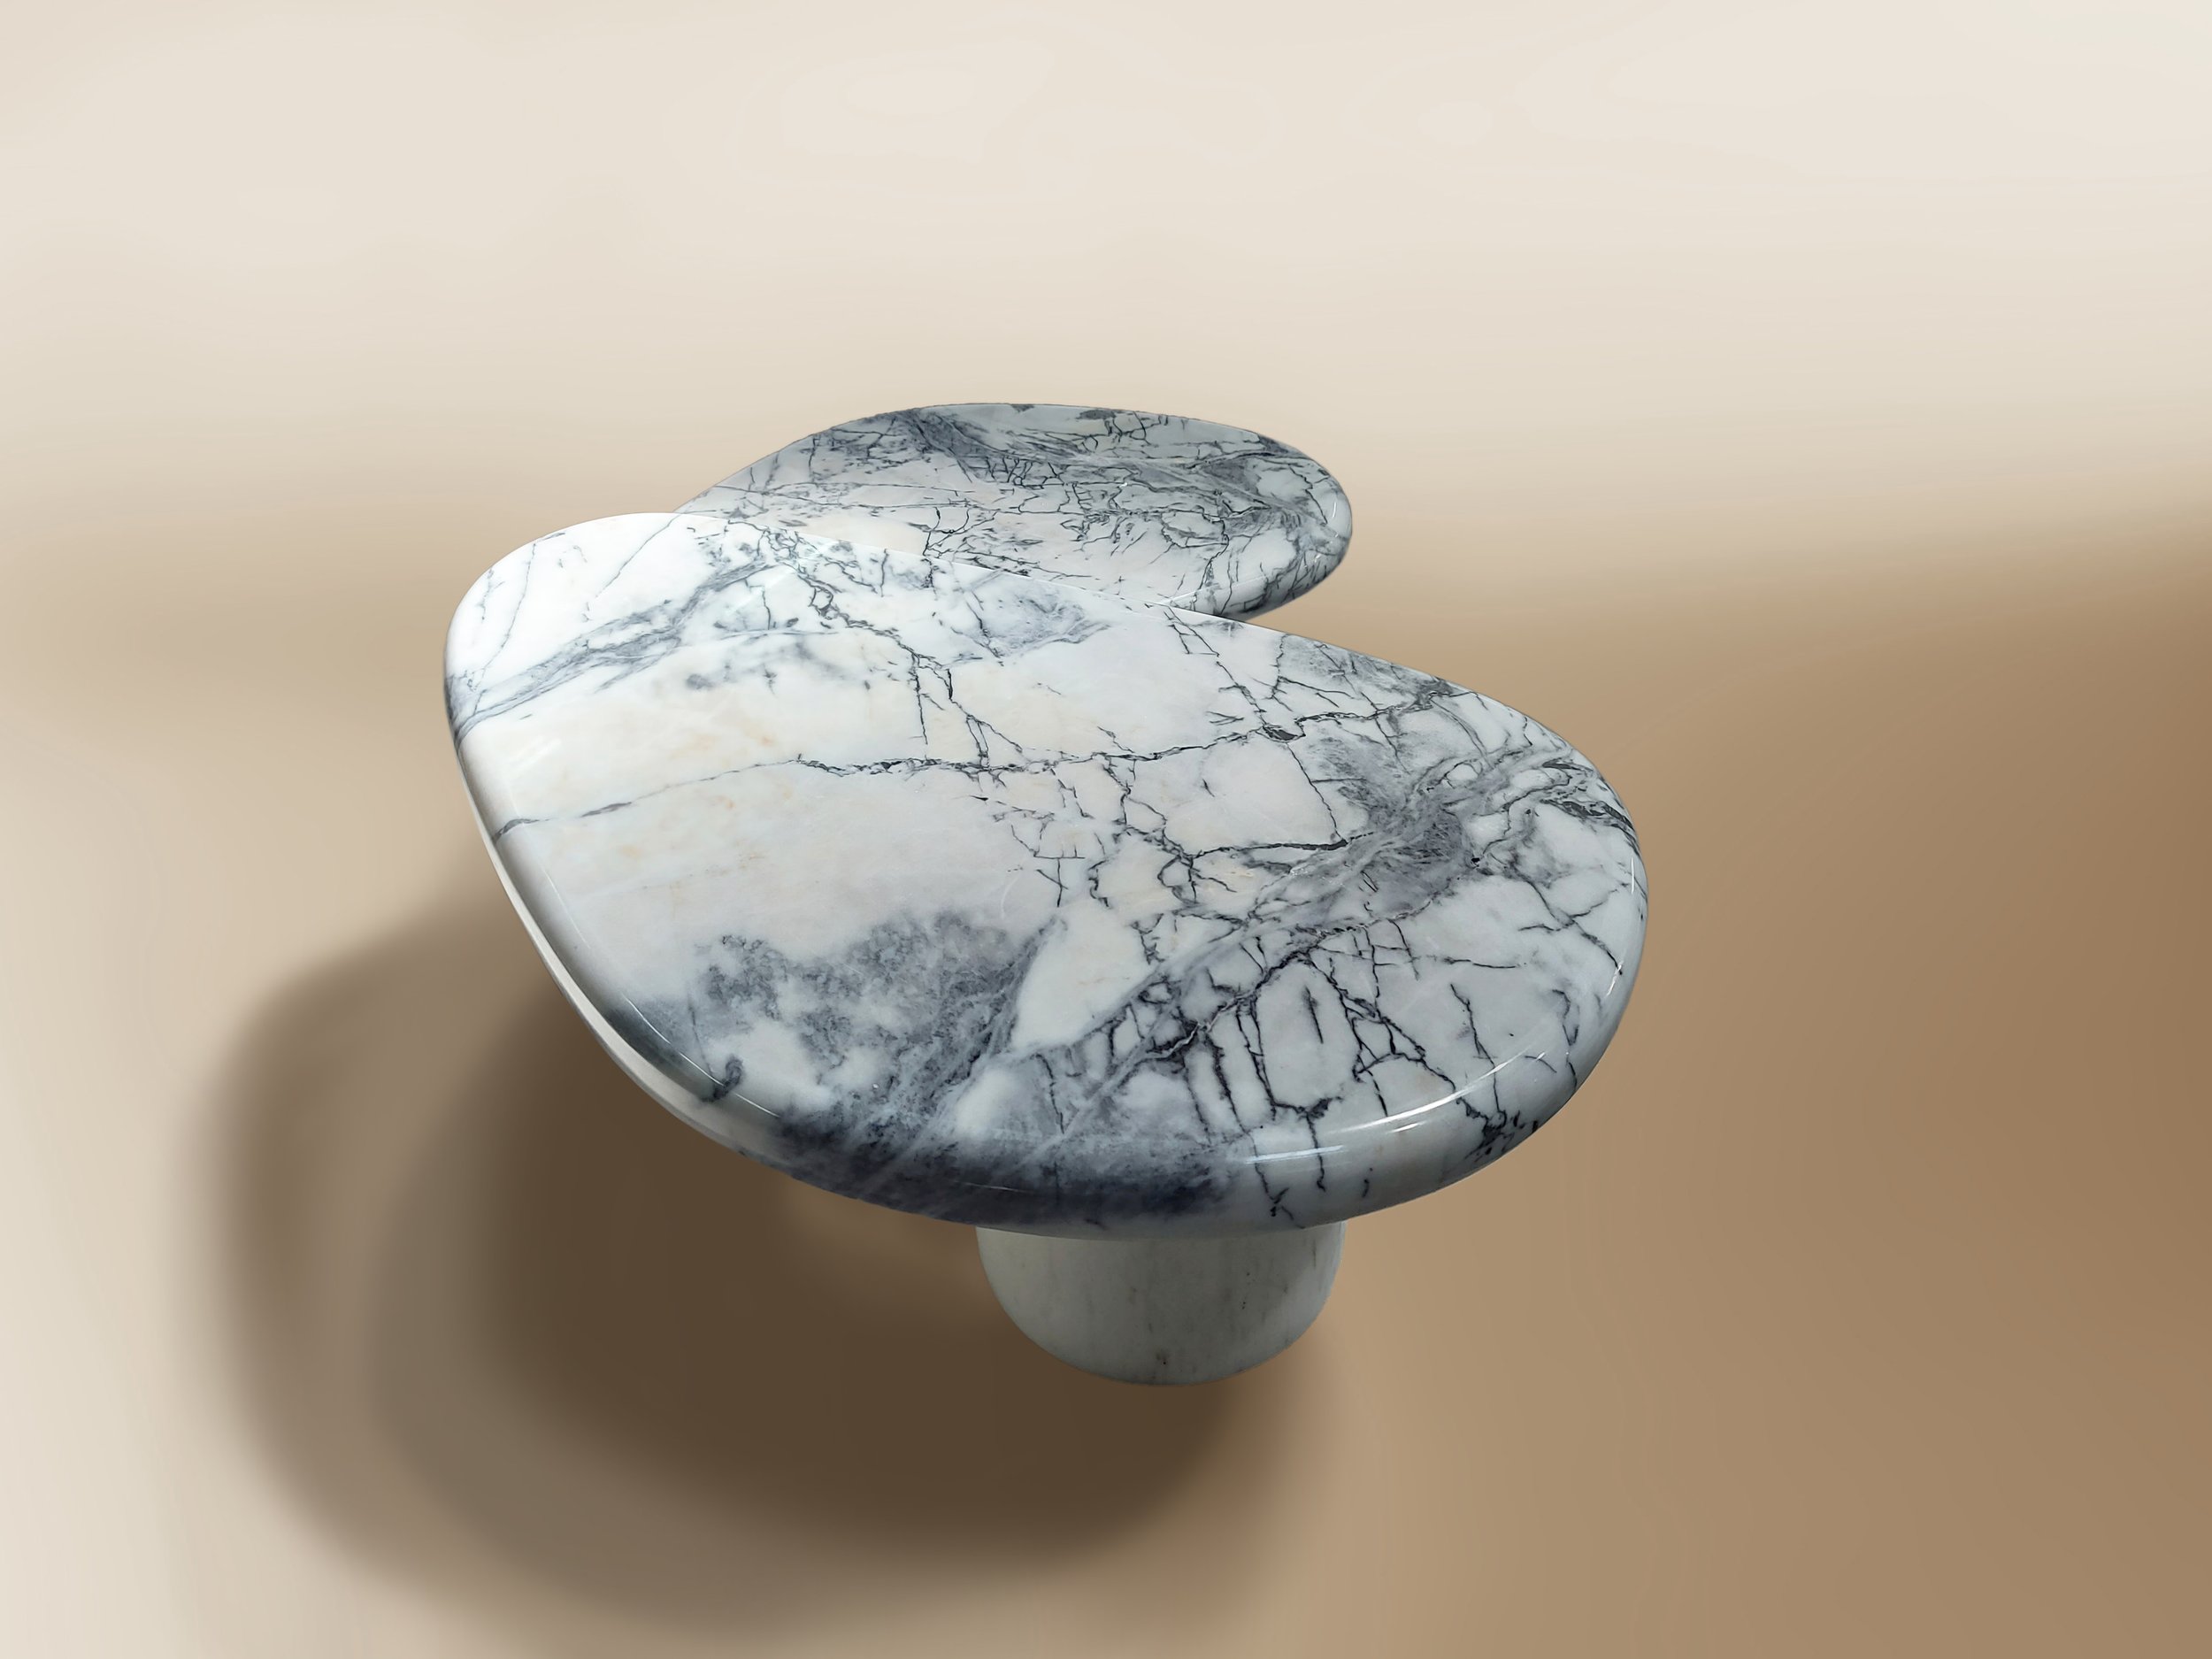 caracole marble center table sergio prieto dovain studio design interior design .jpg